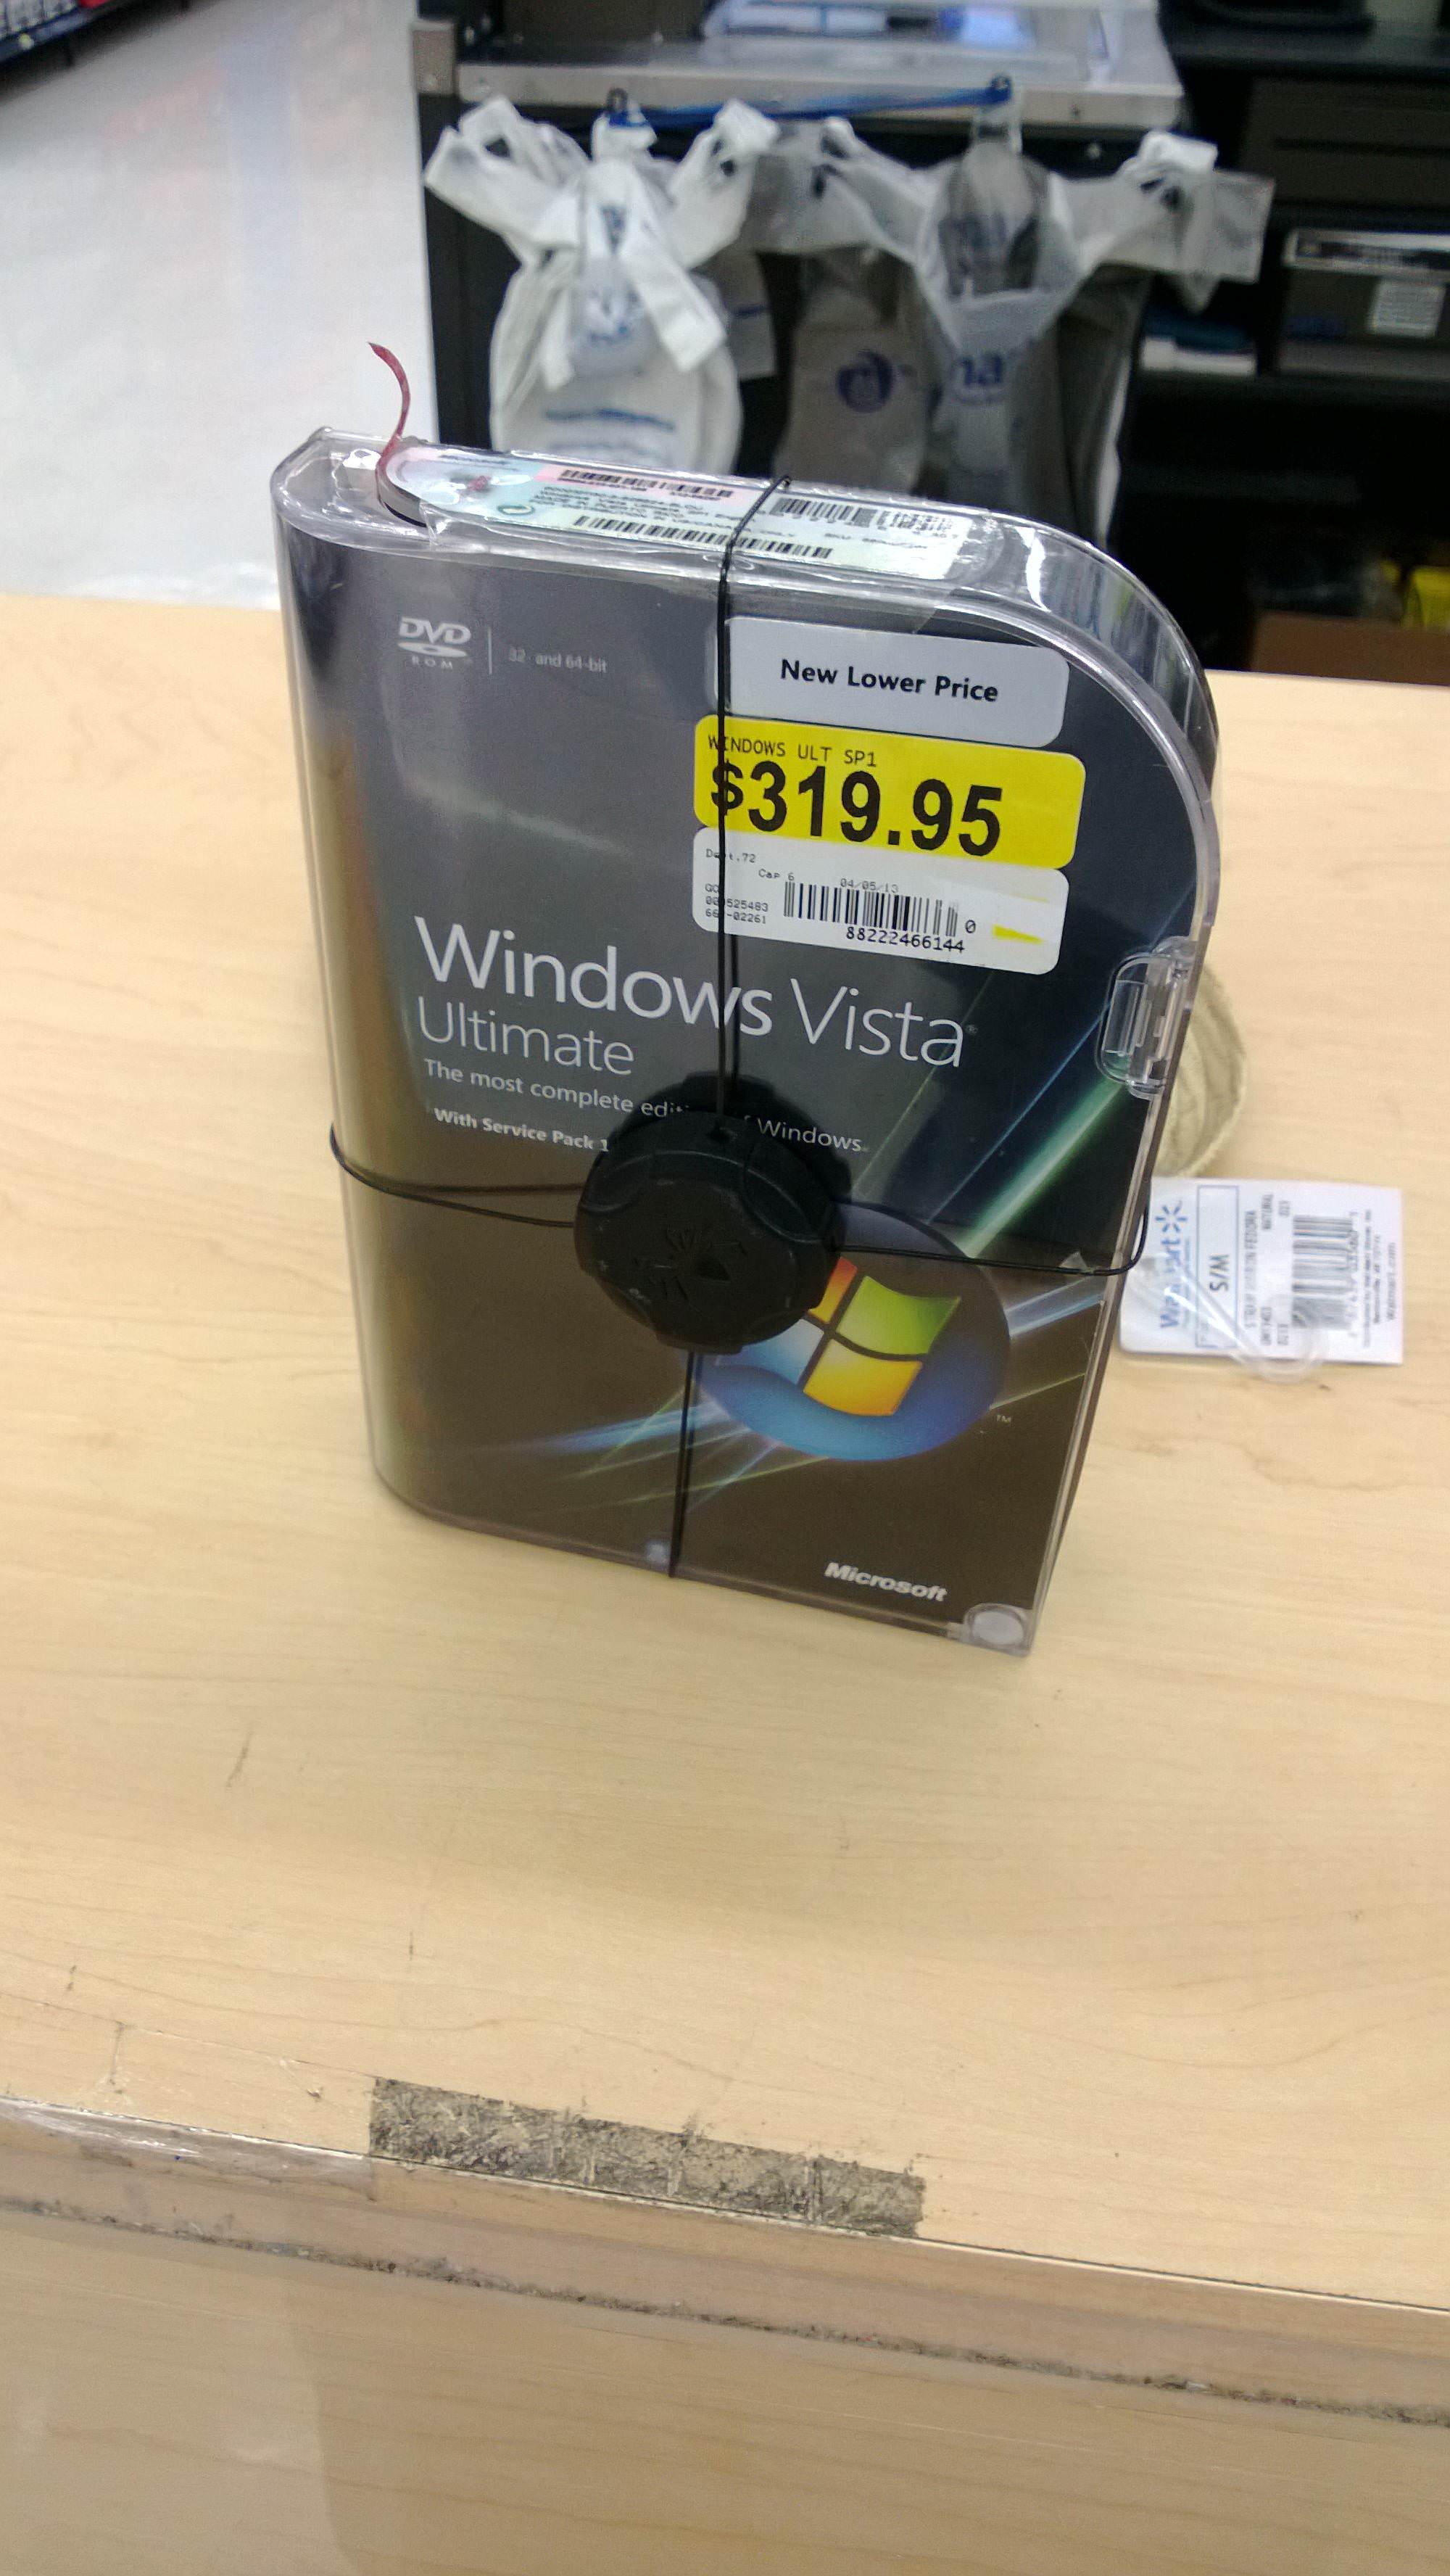 Found Windows Vista at Walmart tonight